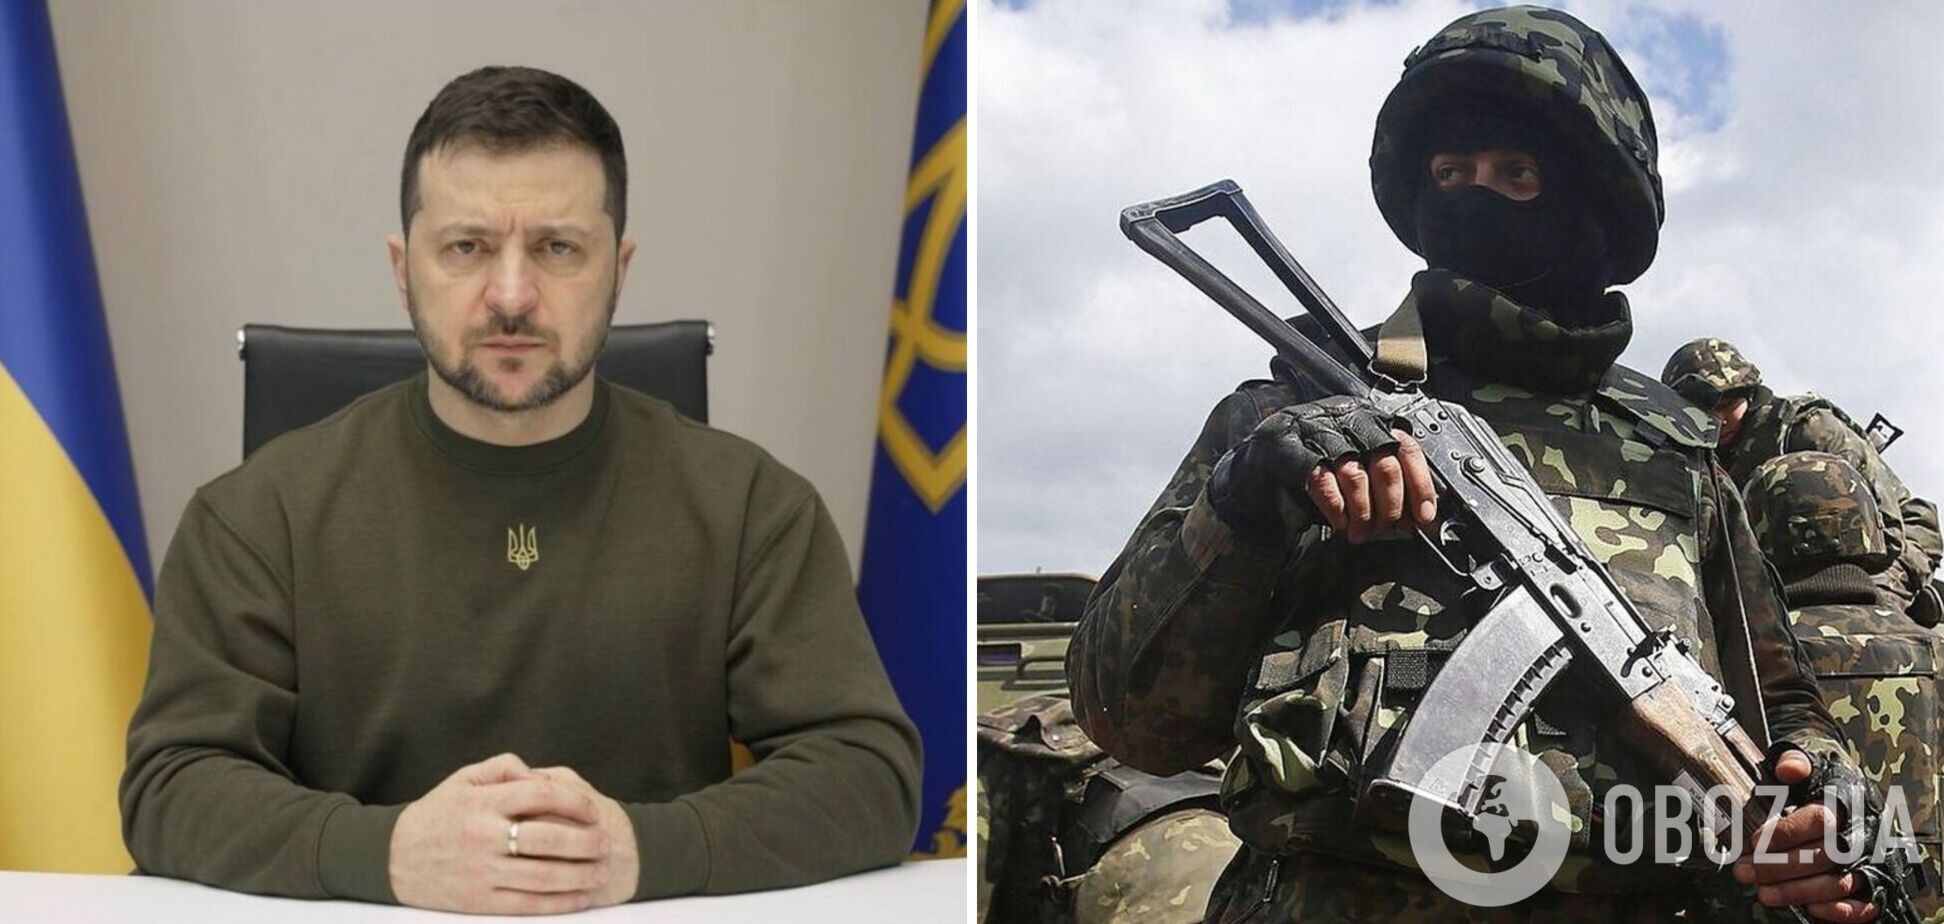 'У Украины будет больше возможностей для защиты': Зеленский пообещал содержательные октябрь и ноябрь. Видео